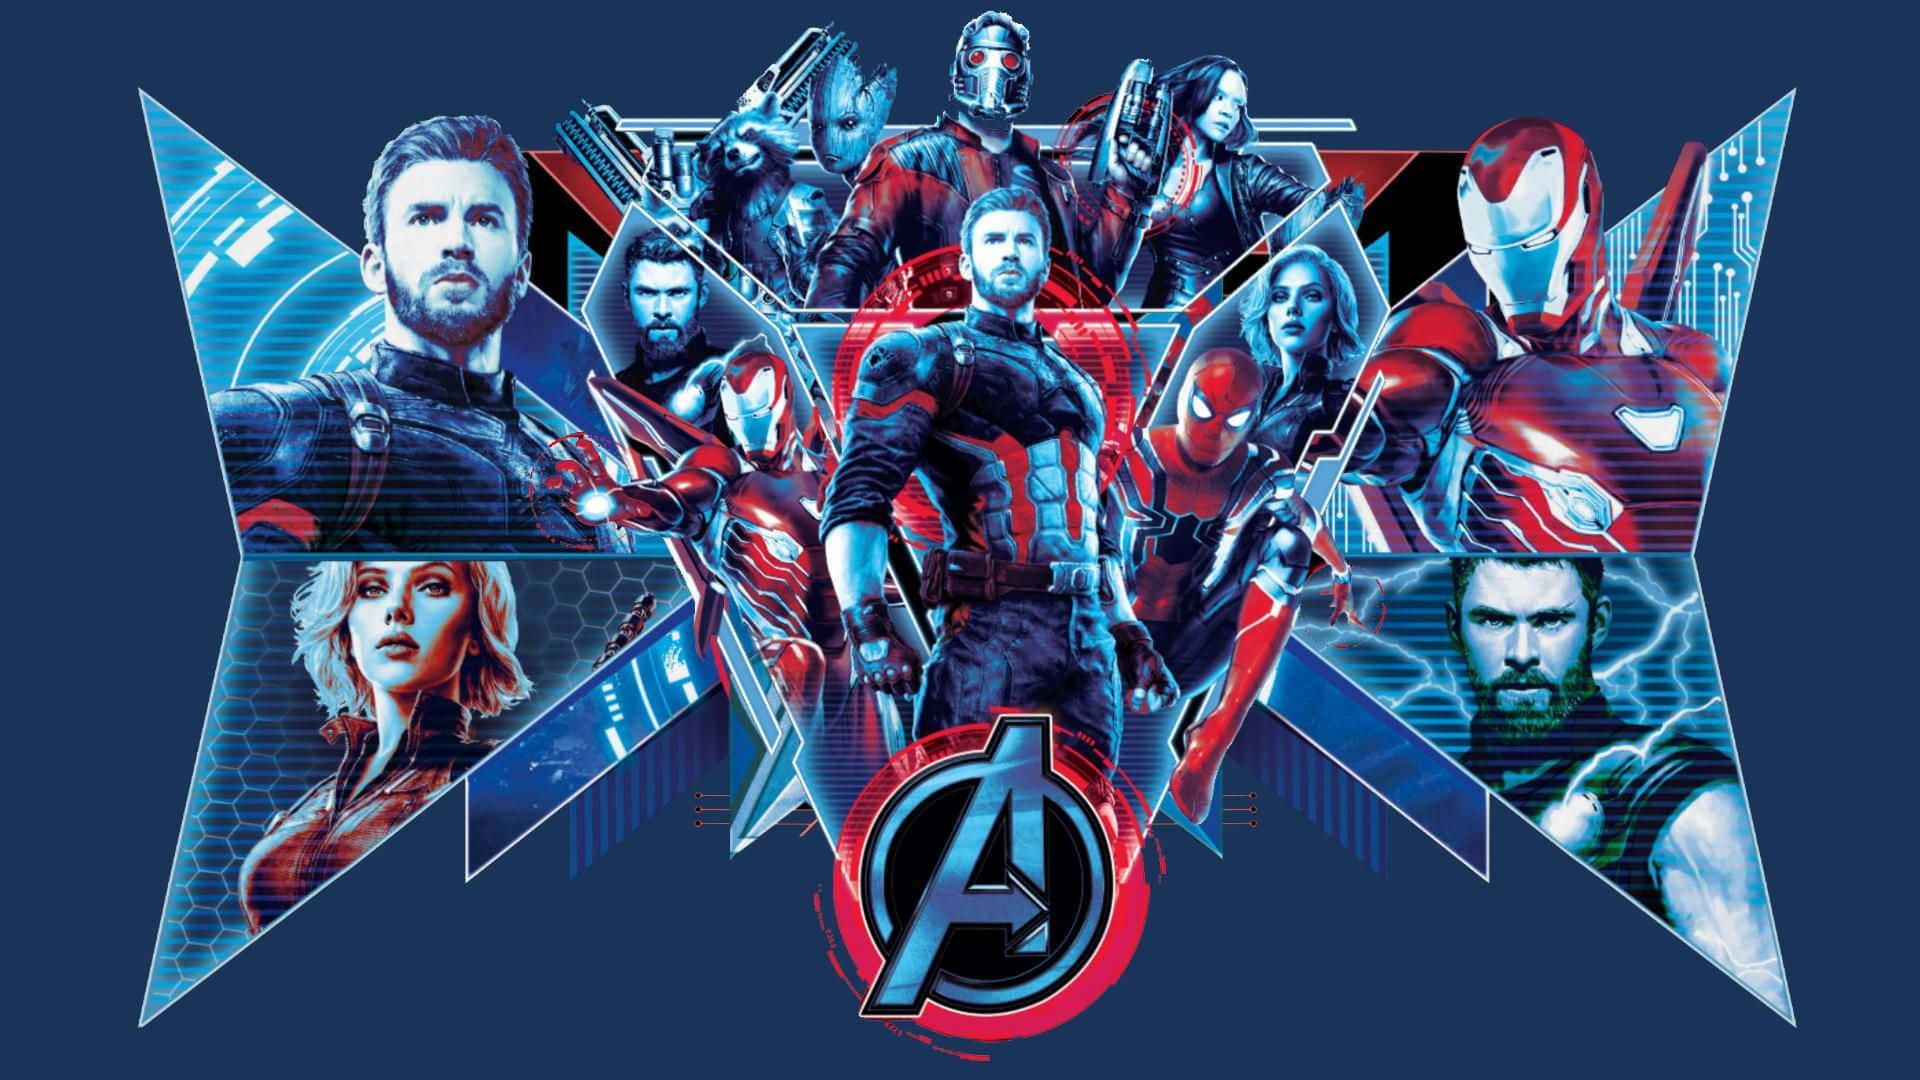 Avengers - Endgame t-shirt trække motivering: bliv en helt! Wallpaper